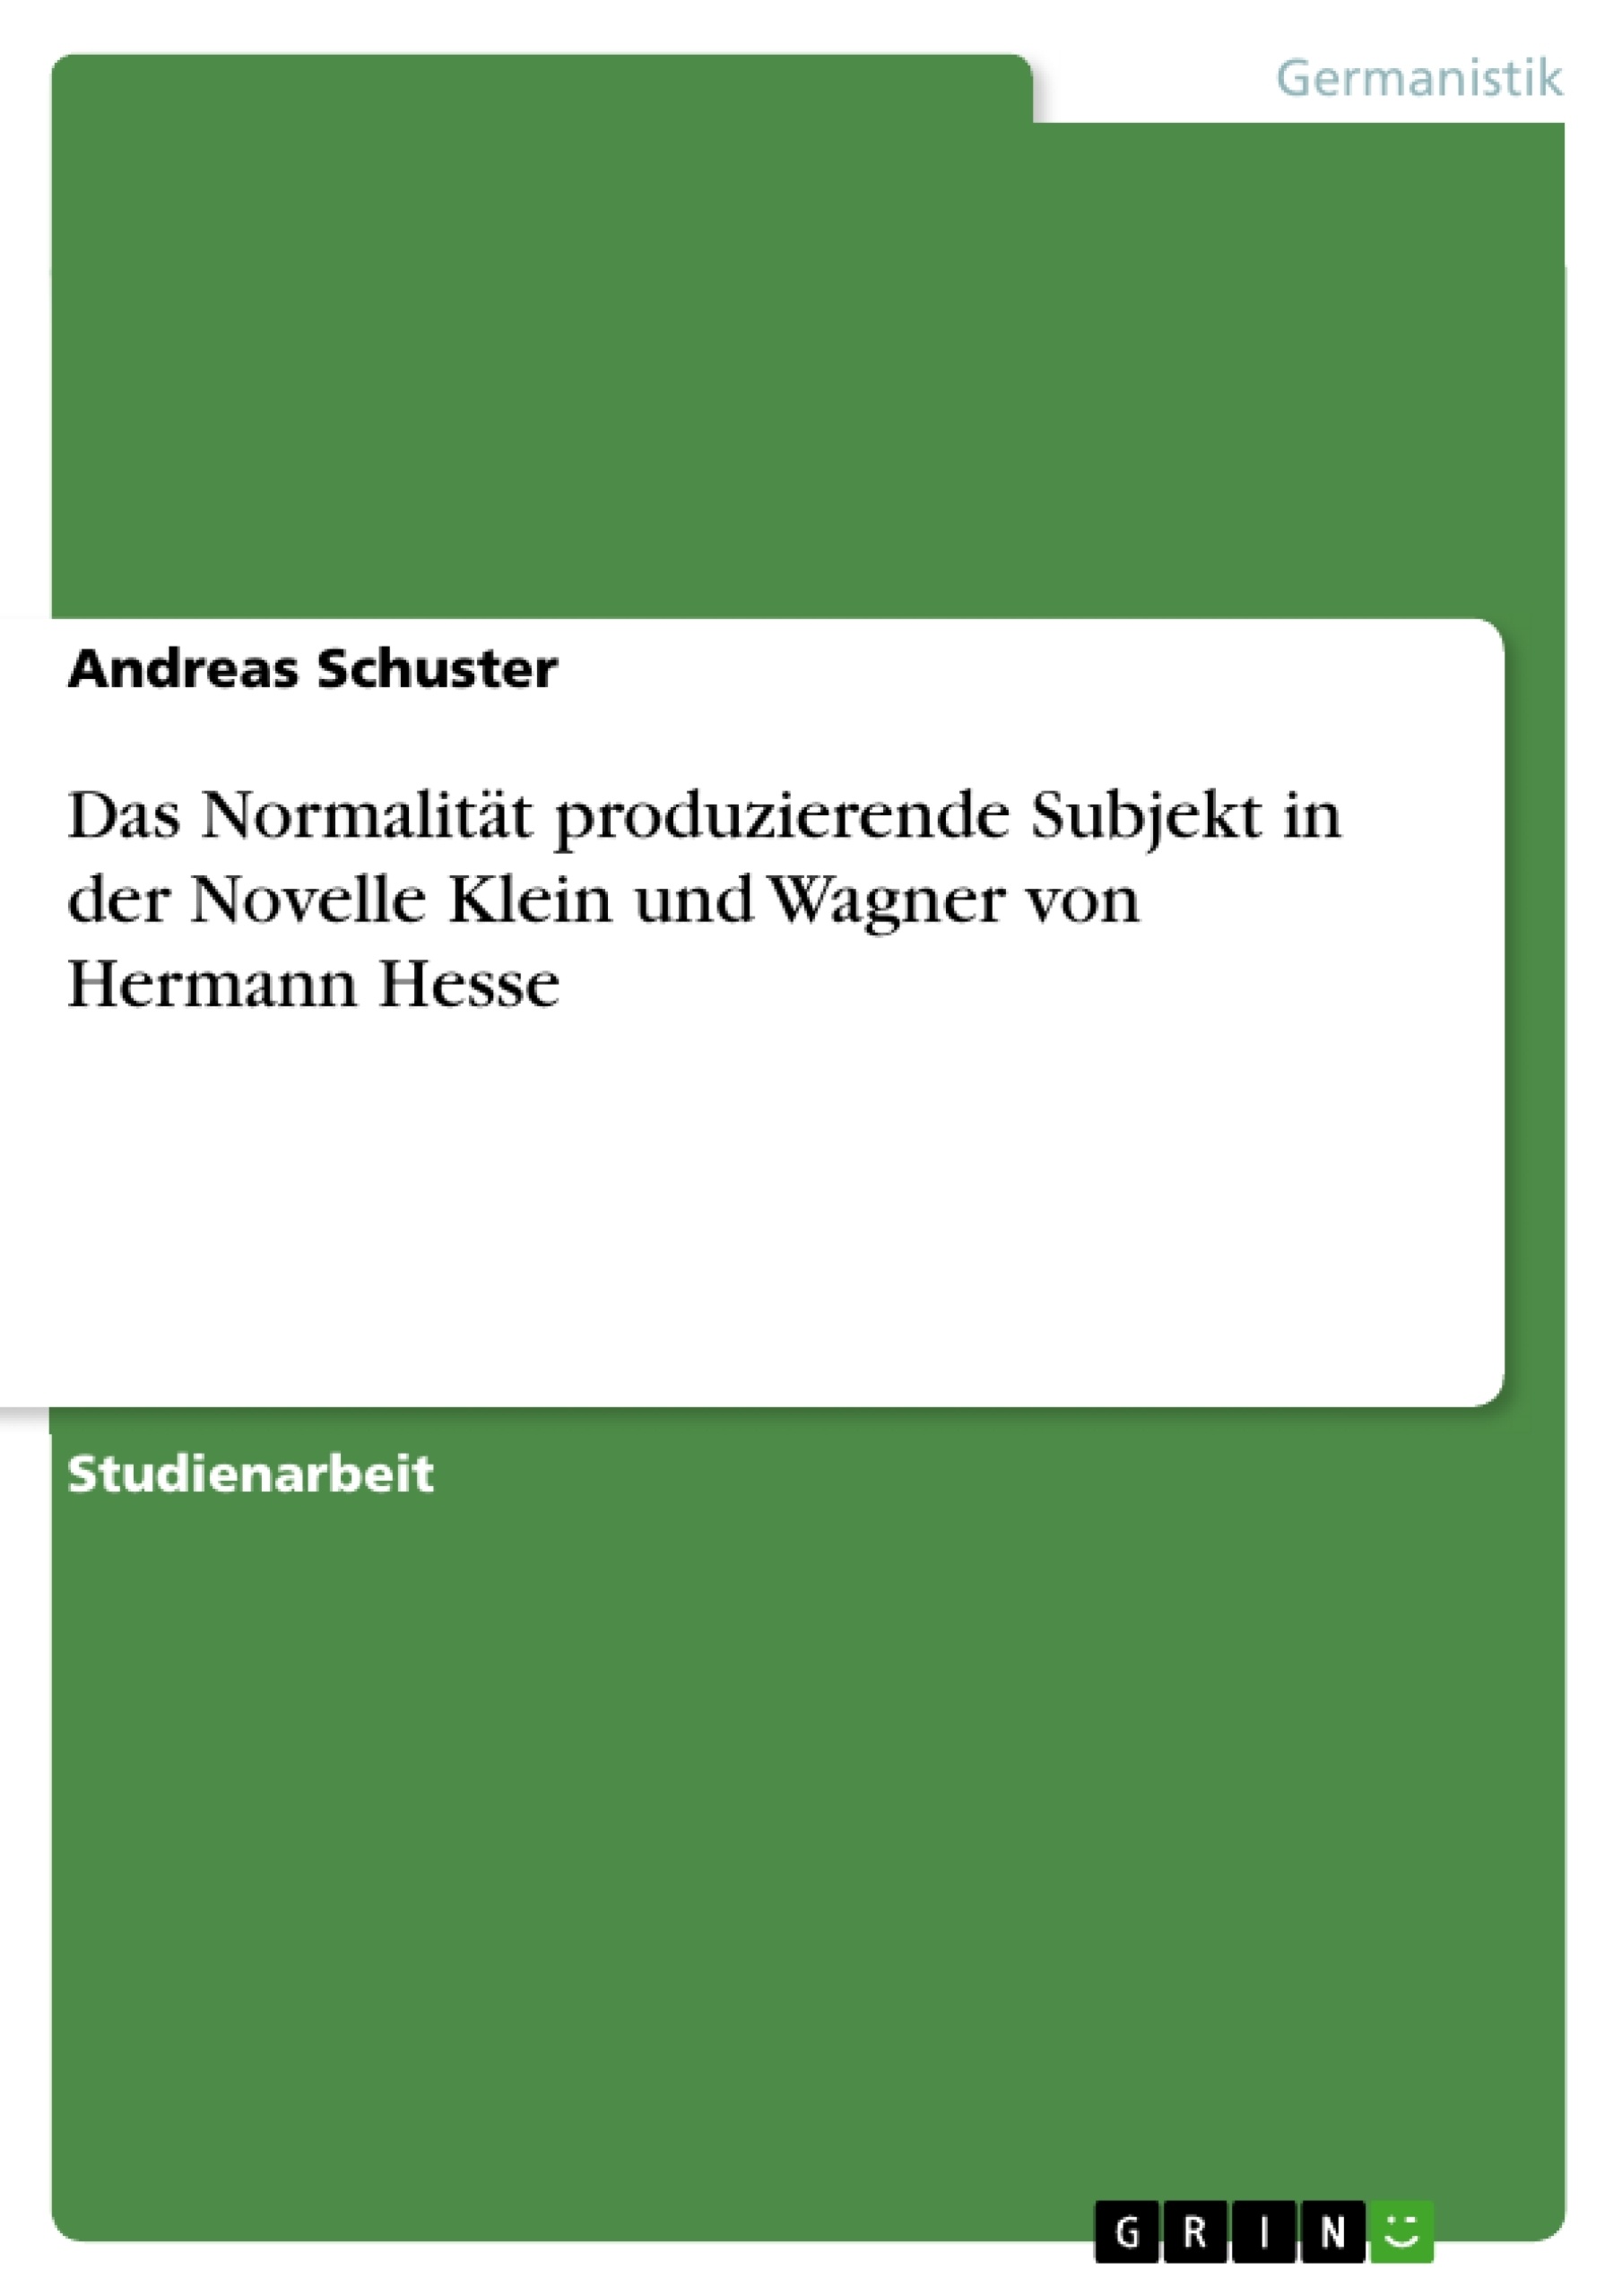 Title: Das Normalität produzierende Subjekt in der Novelle Klein und Wagner von Hermann Hesse 